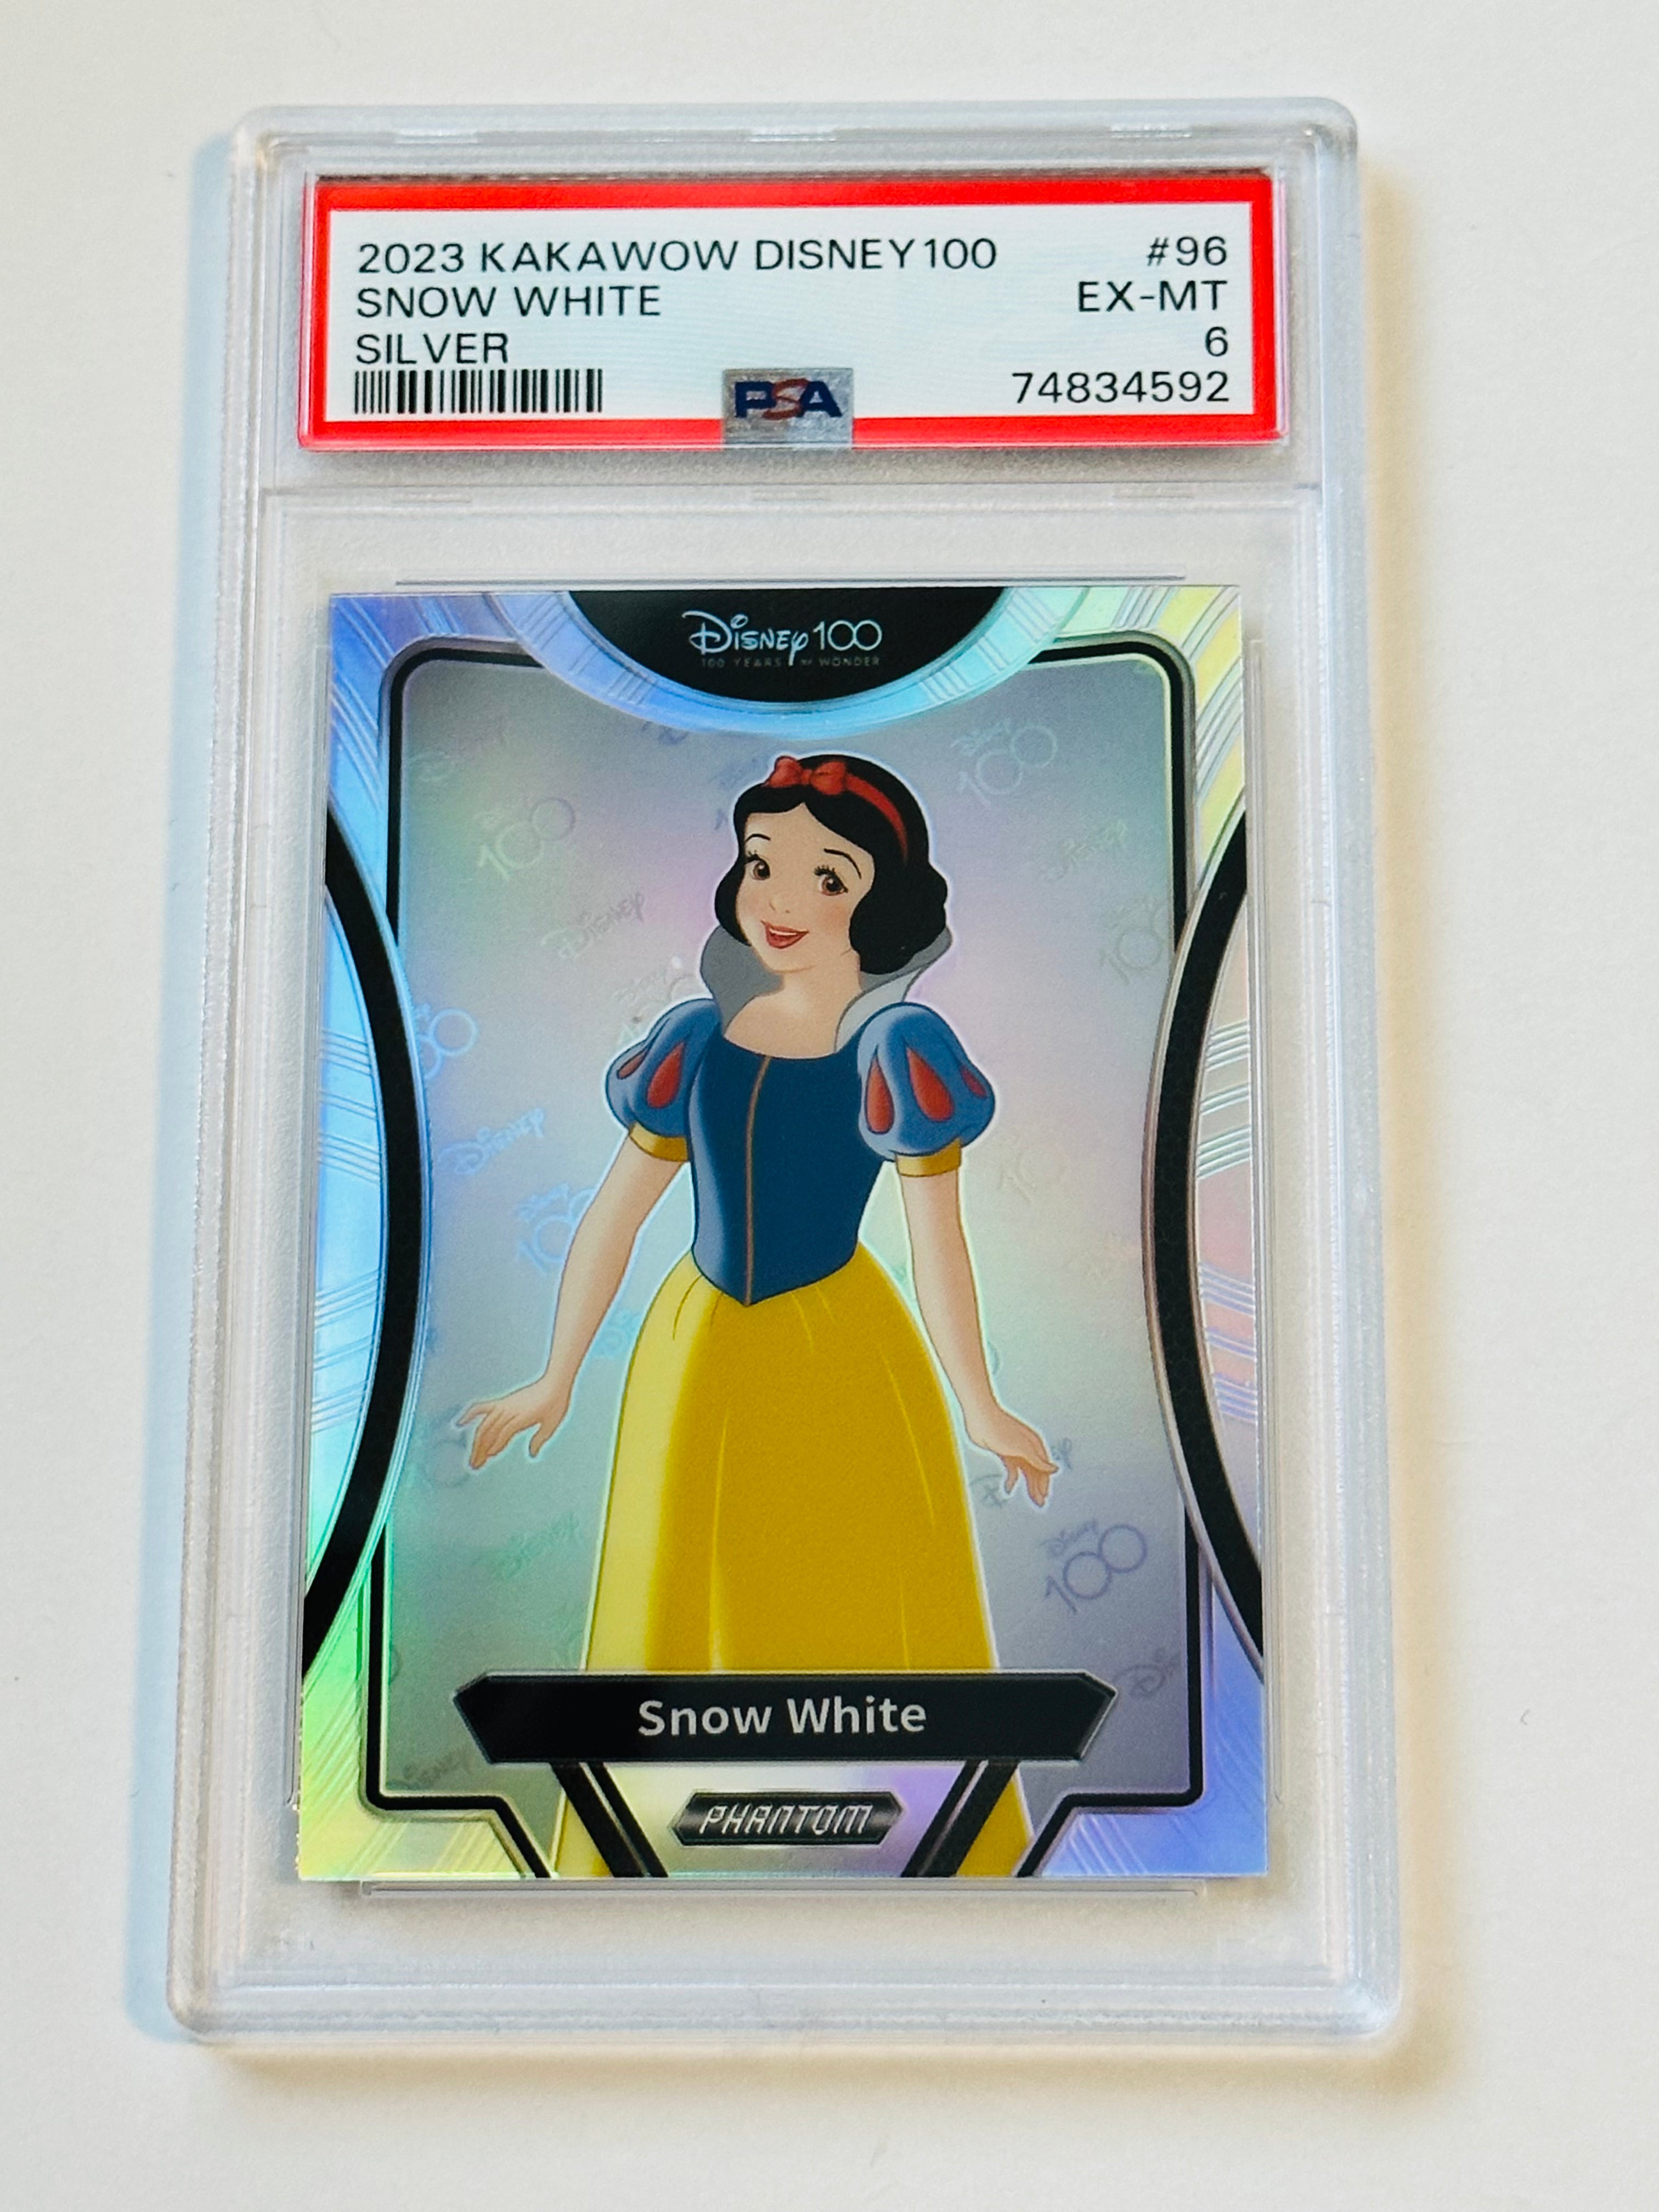 Disney 100 Kakawow Snow White PSA high grade card 2023